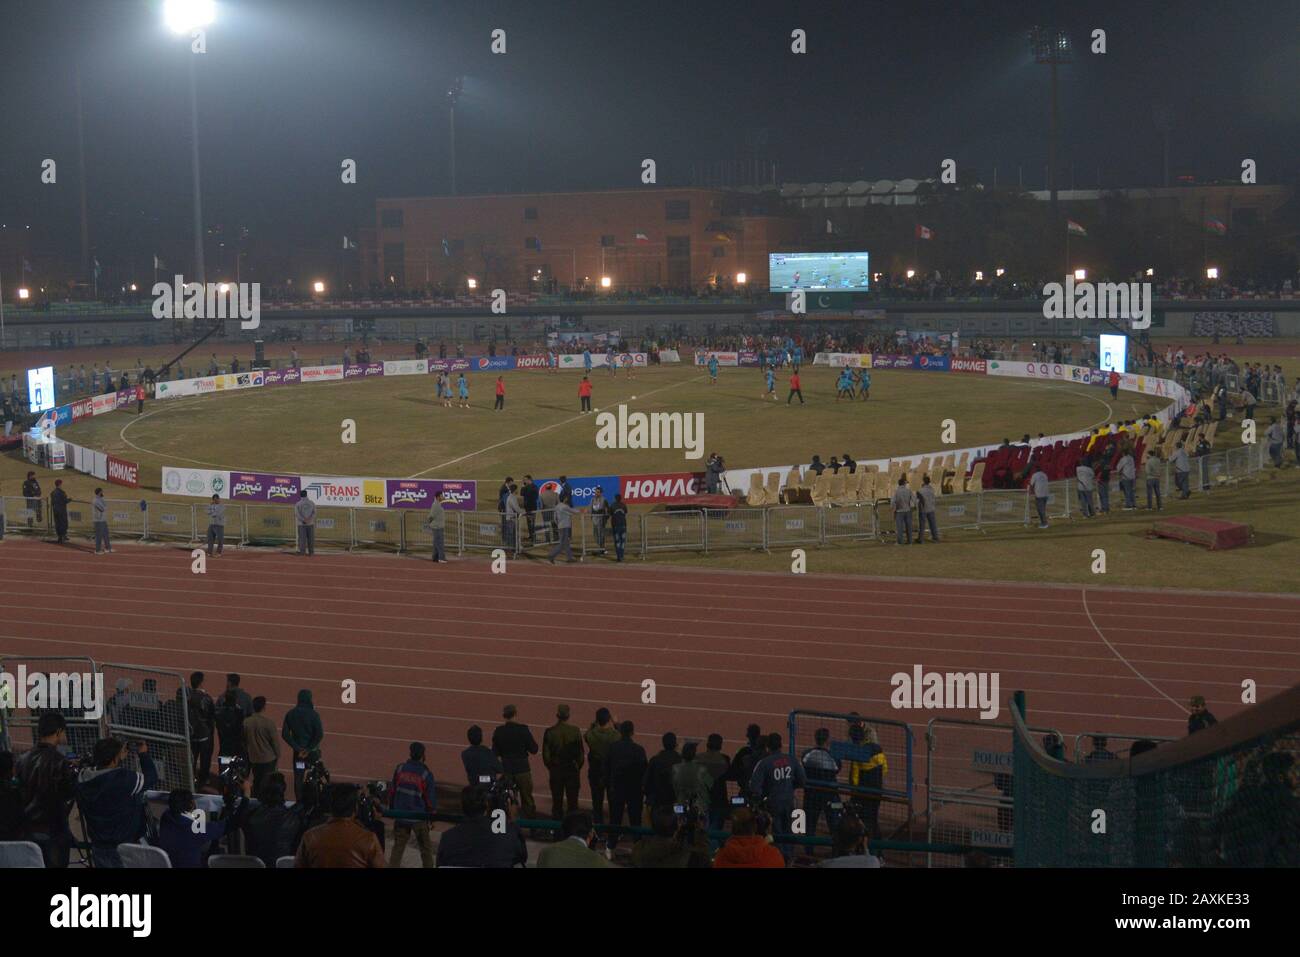 Les joueurs de Kabaddi semblent en action lors du match entre l'Inde et la Sierra Leone, alors que l'équipe indienne de Kabaddi gagne de 18-45 pendant la coupe du monde de Kabaddi 2020 au Punjab Stadium Lahore. La coupe du monde Kabaddi 2020 commence au Pakistan. Tout est prévu pour la "coupe du monde Kabaddi 2020" qui se tiendra dans trois villes de Lahore, de Faisalabad et de Gujrat du 9 au 16 février respectivement. L'événement est organisé conjointement par le gouvernement du Pendjab, le Sports Board Punjab (SBP) et la Pakistan Kabaddi Federation (PKF). (Photo De Rana Sajid Hussain/Pacific Press) Banque D'Images